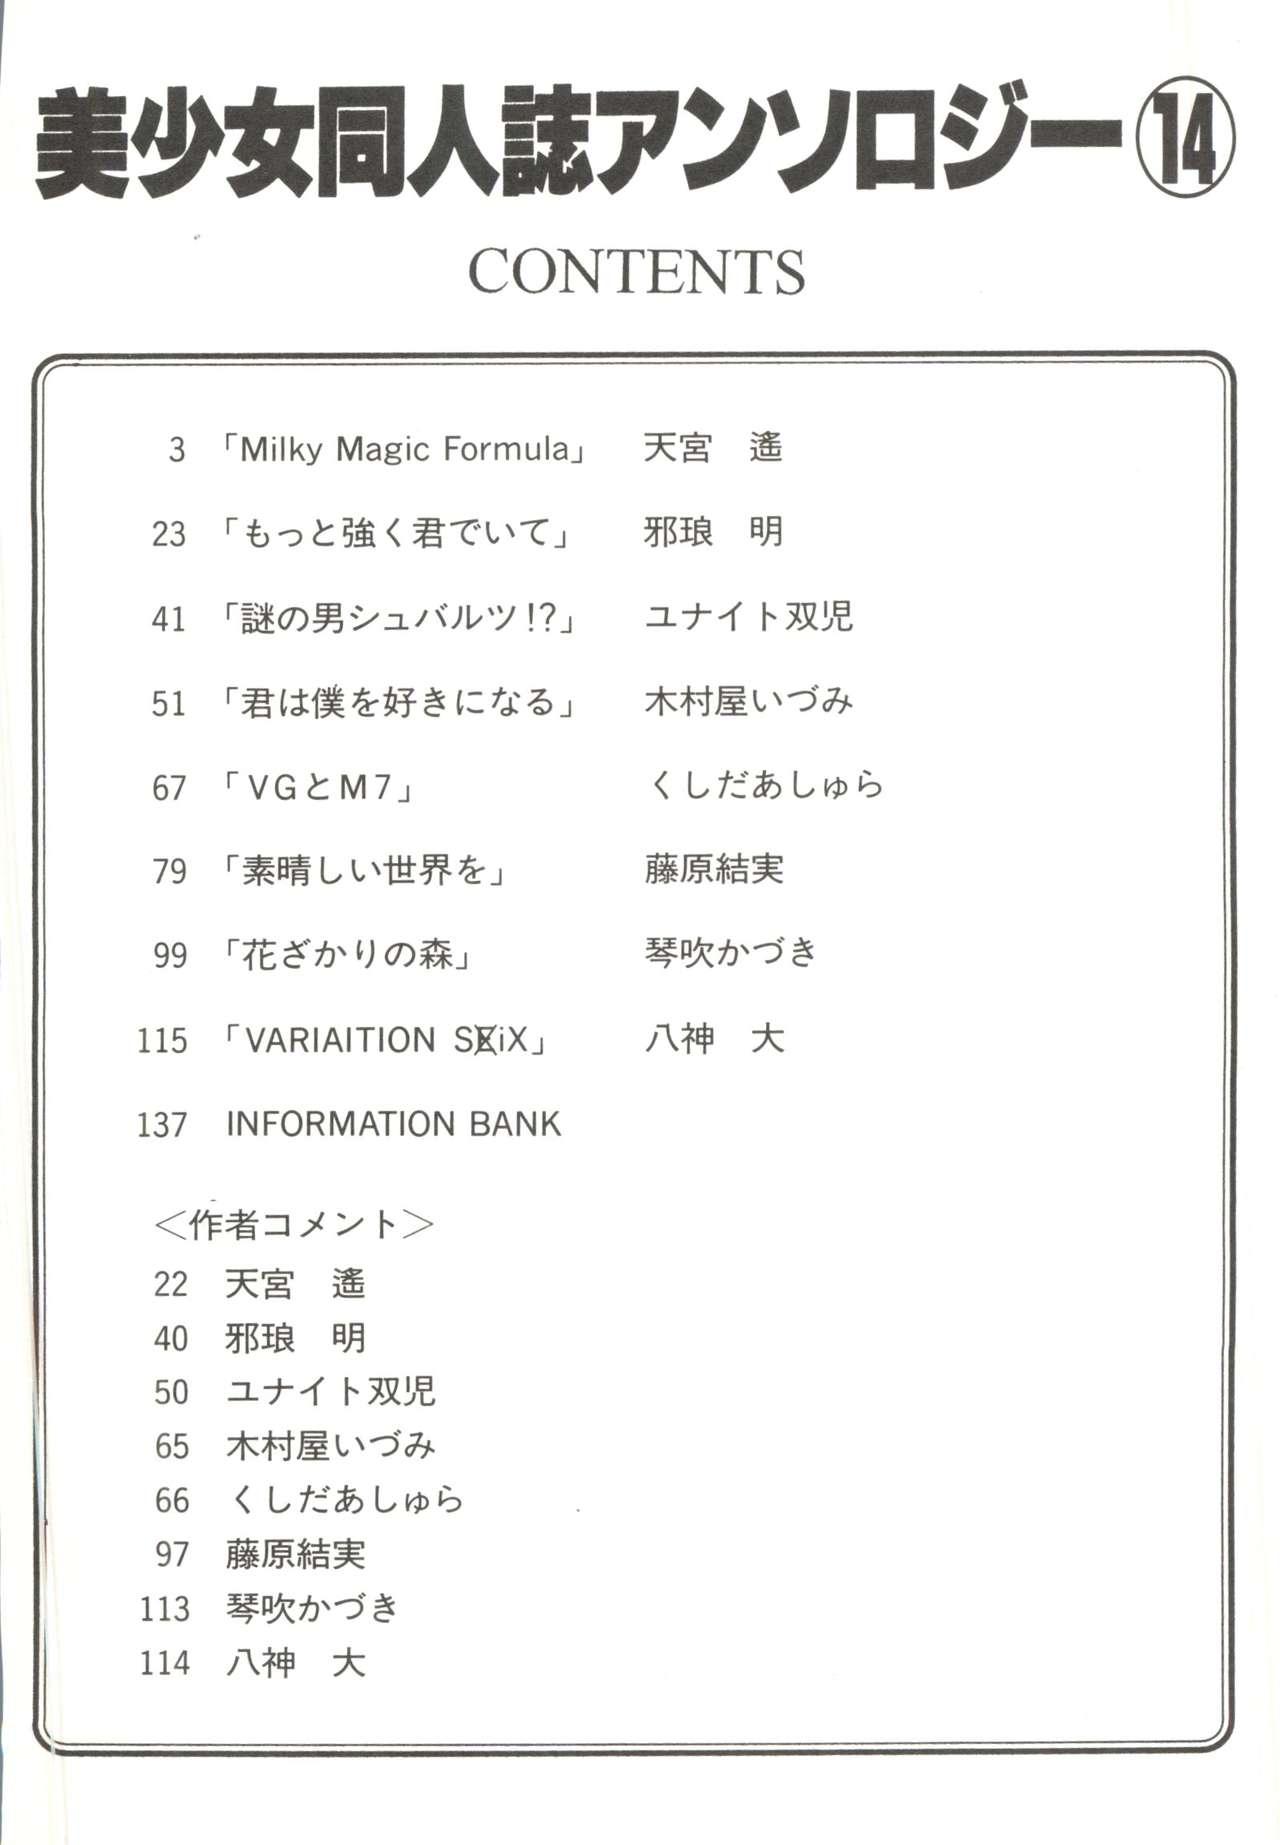 Bishoujo Doujinshi Anthology 14 4